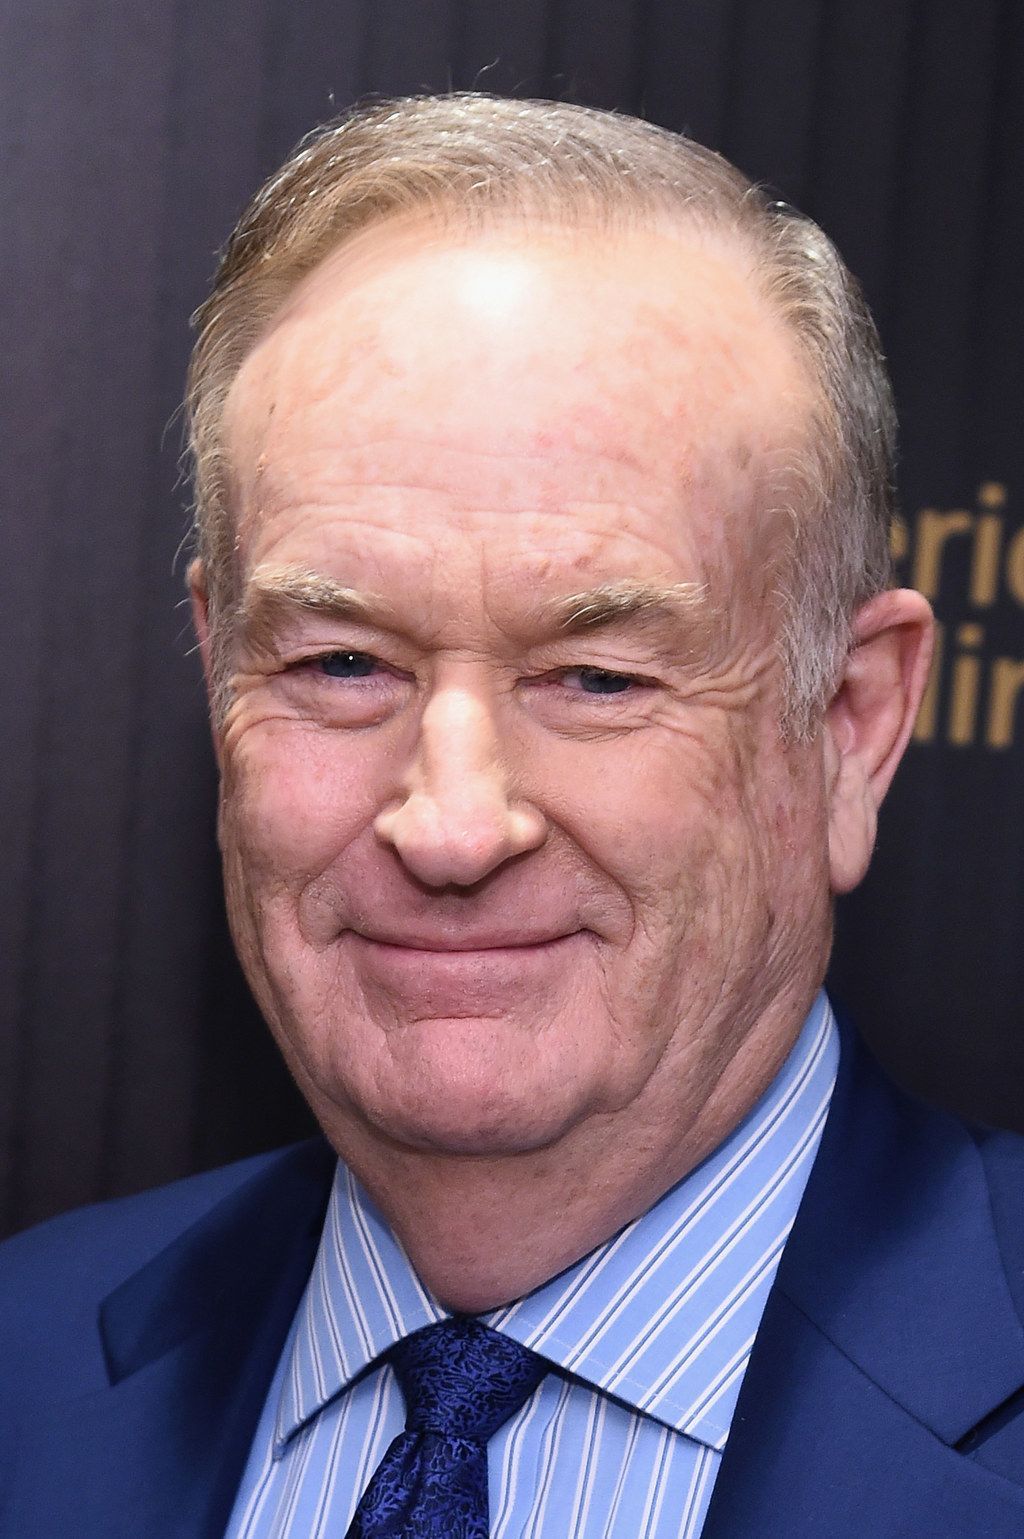 Inimesed on vihased pärast seda, kui Bill O'Reilly tegi musta kongressinaise juustega nalja